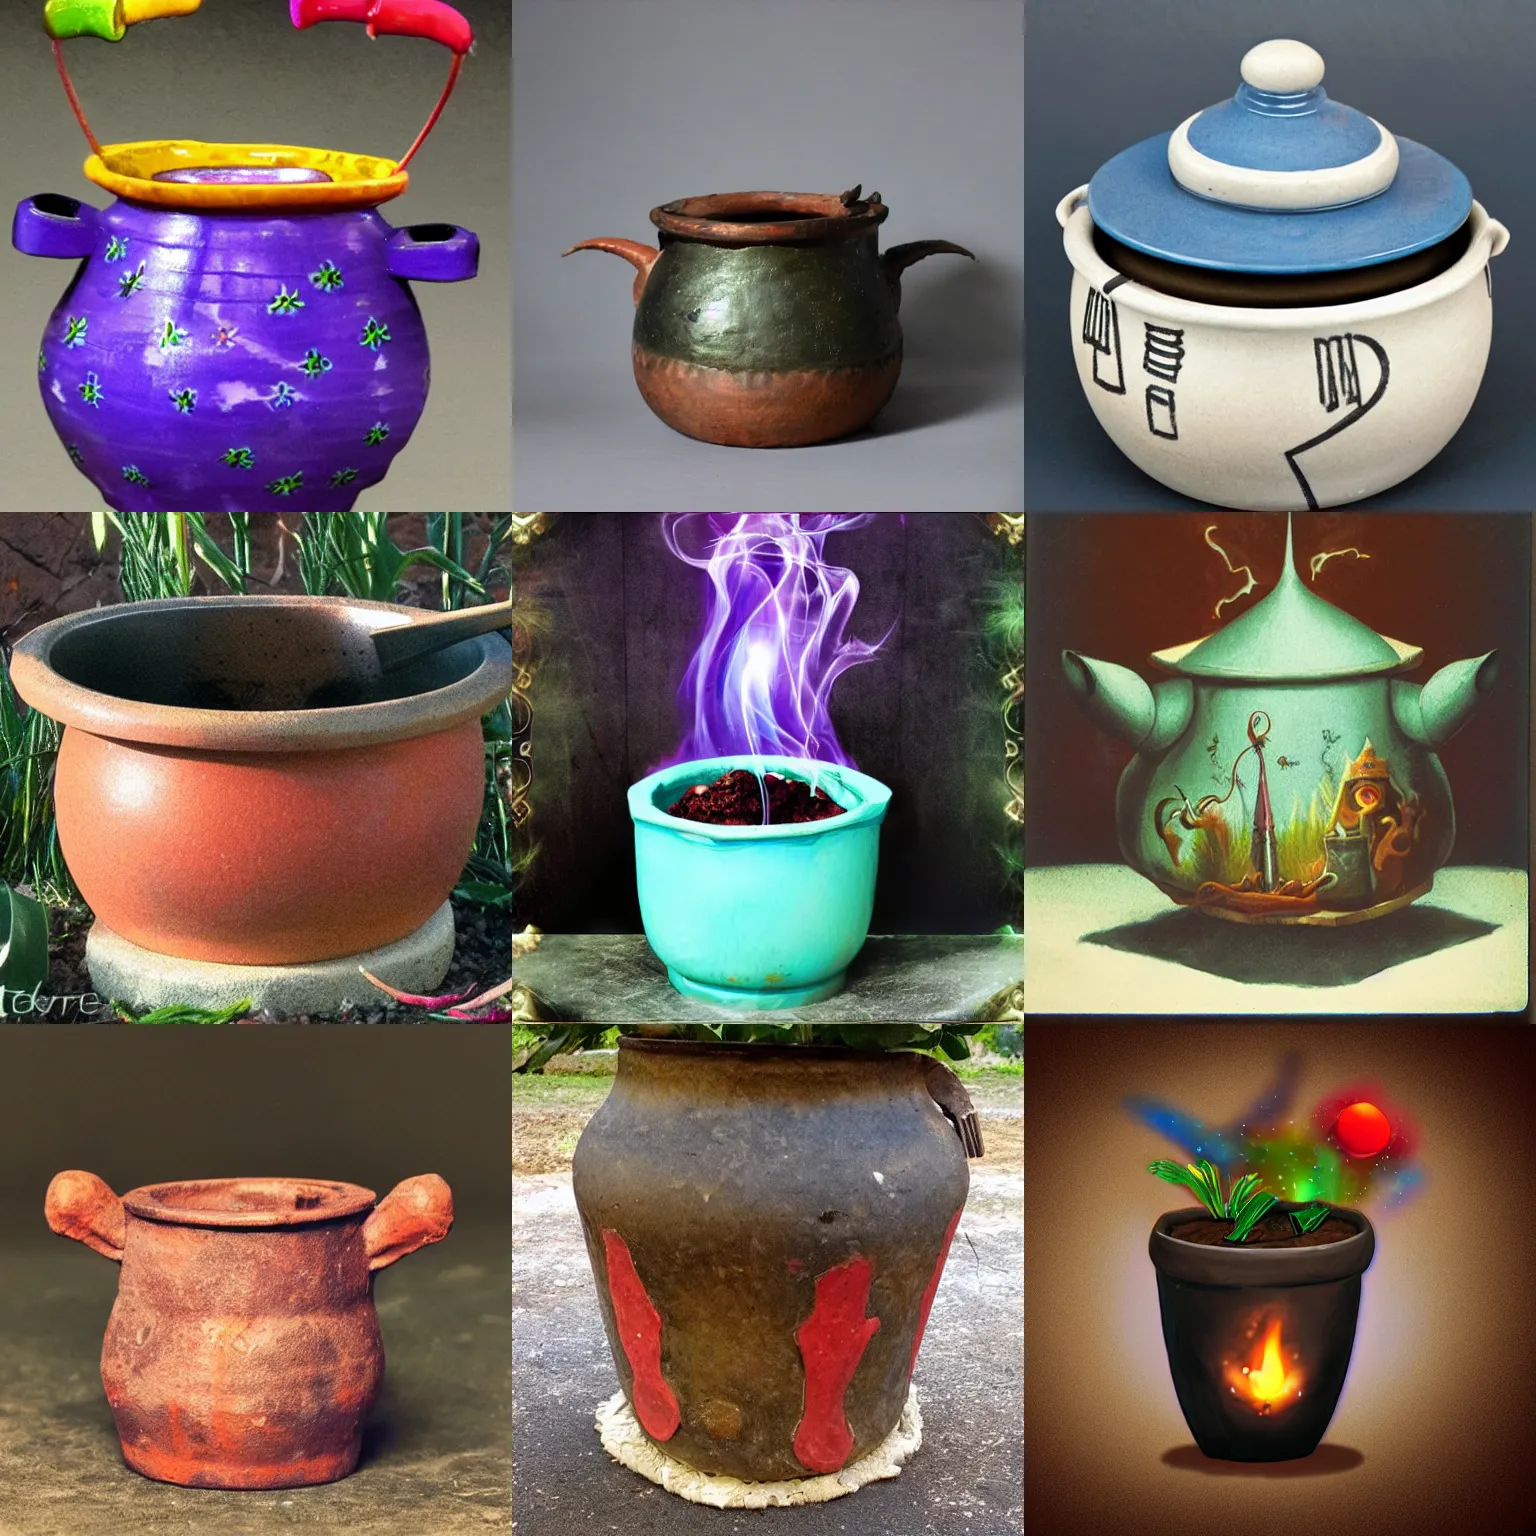 Prompt: a magic pot with magic